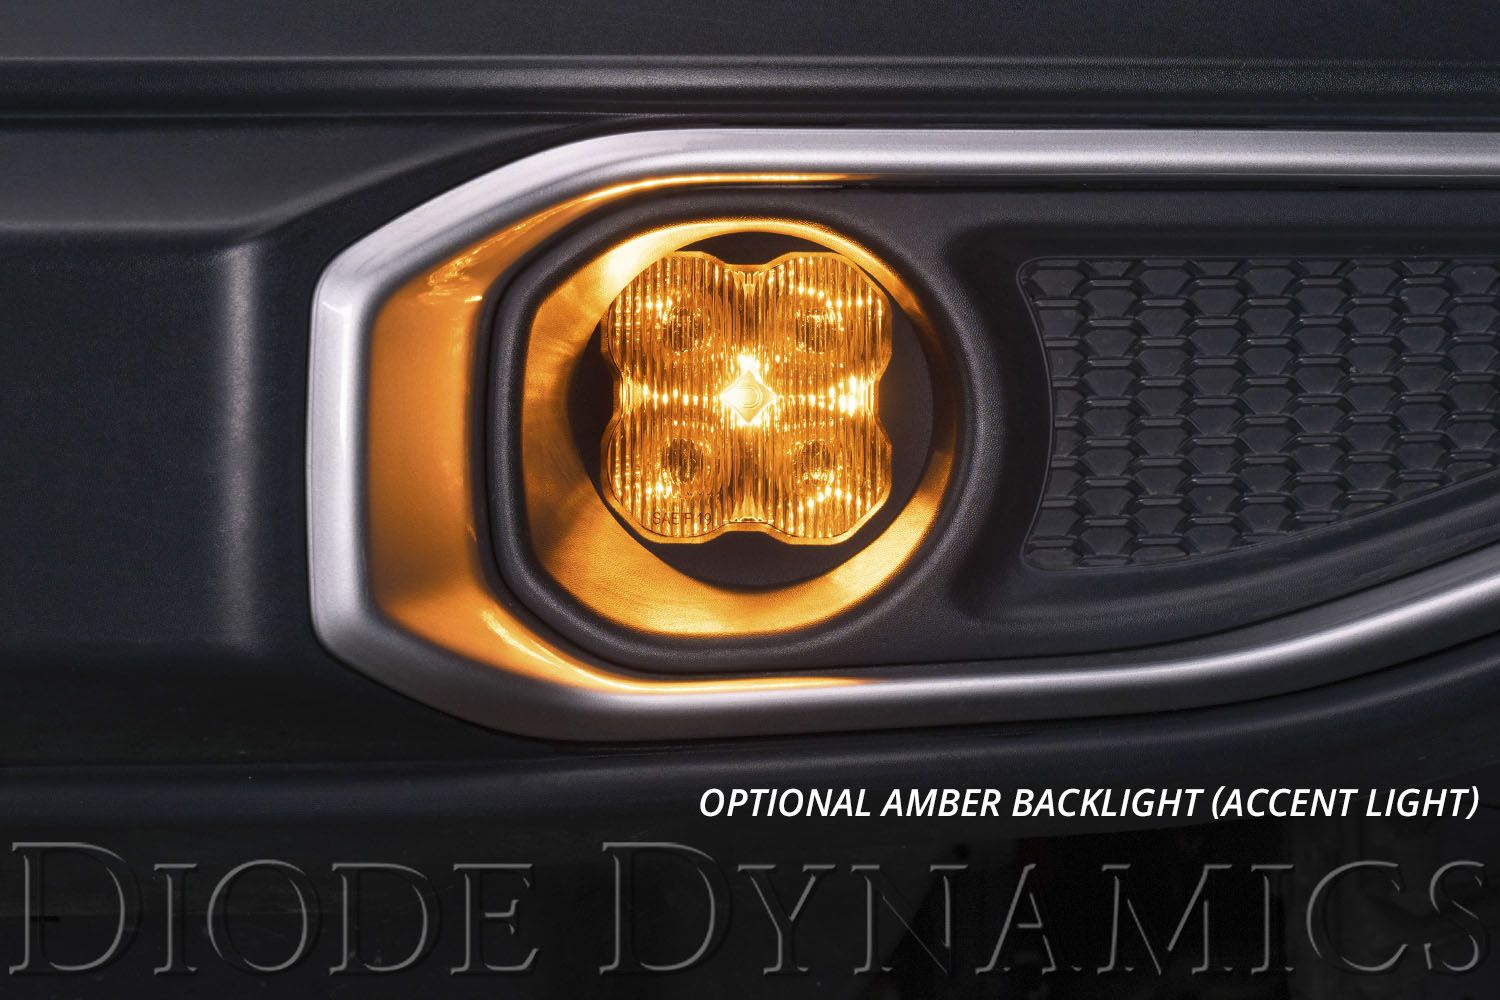 SS3 LED Fog Light Kit for 2013-2015 Lexus GS450h Diode Dynamics-